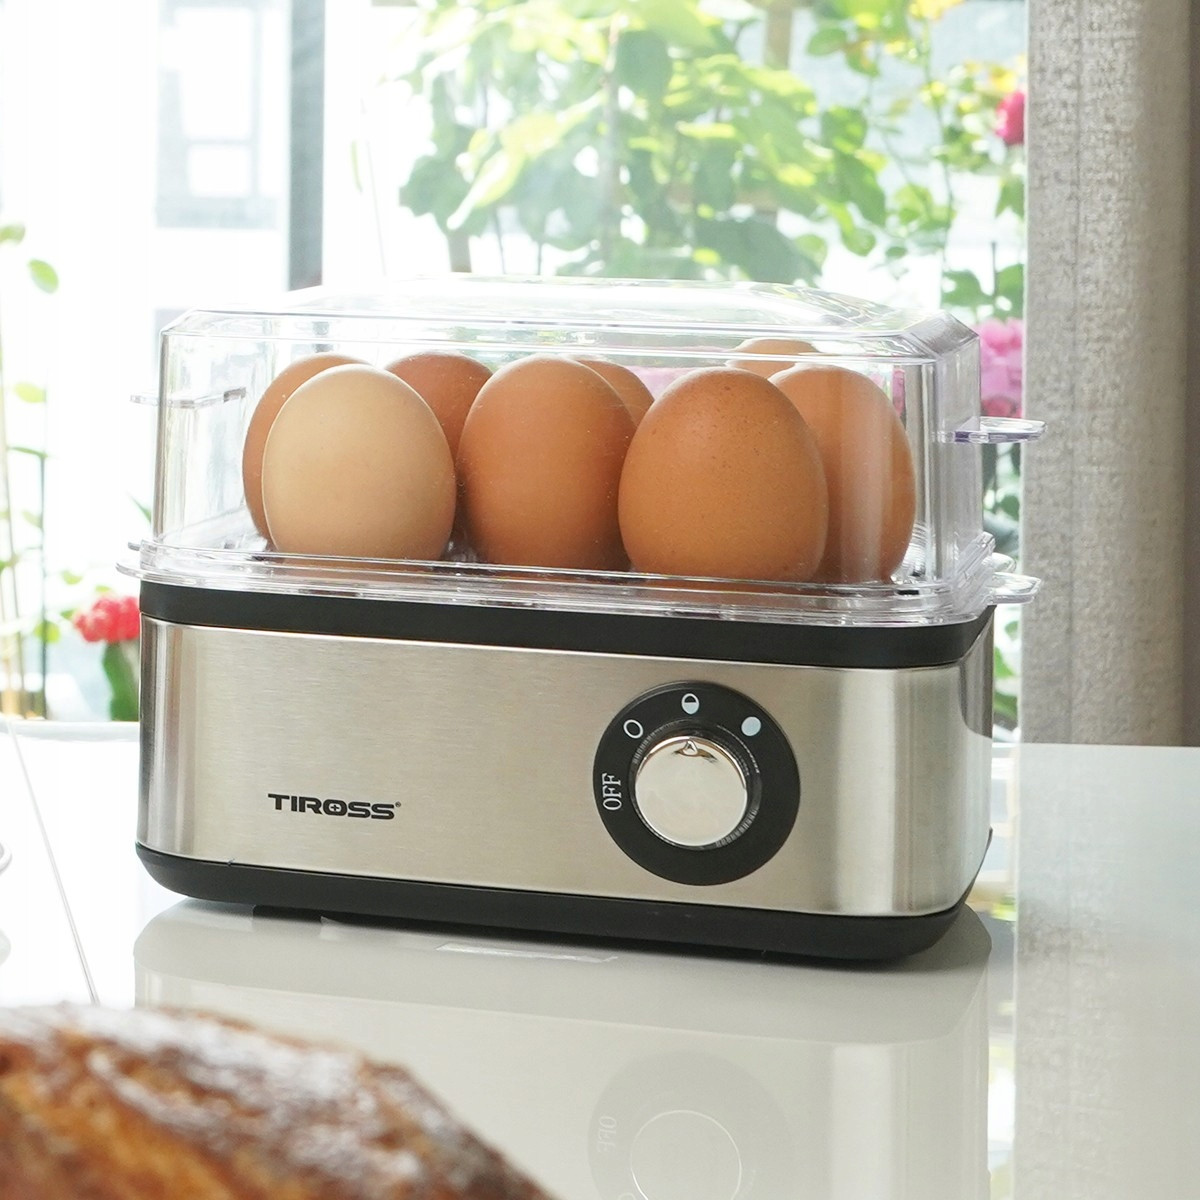 Vařič Vajec Tiross Ts 2302 strojek na vejce automat